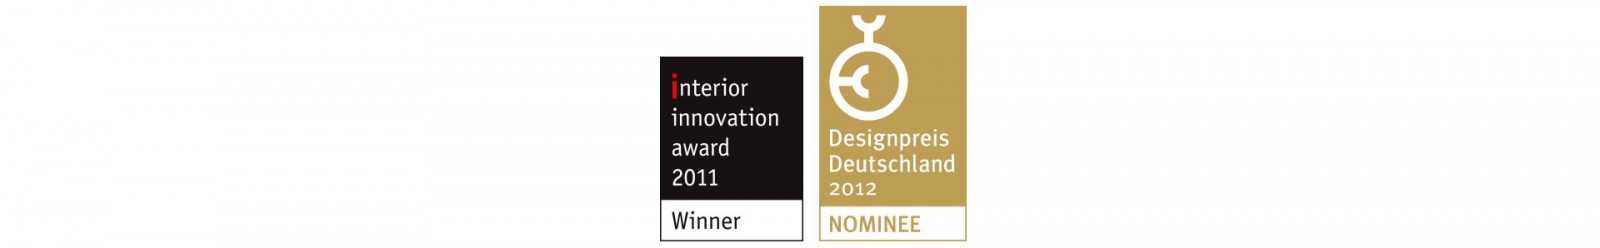 designpreis designaward award design auszeichnung